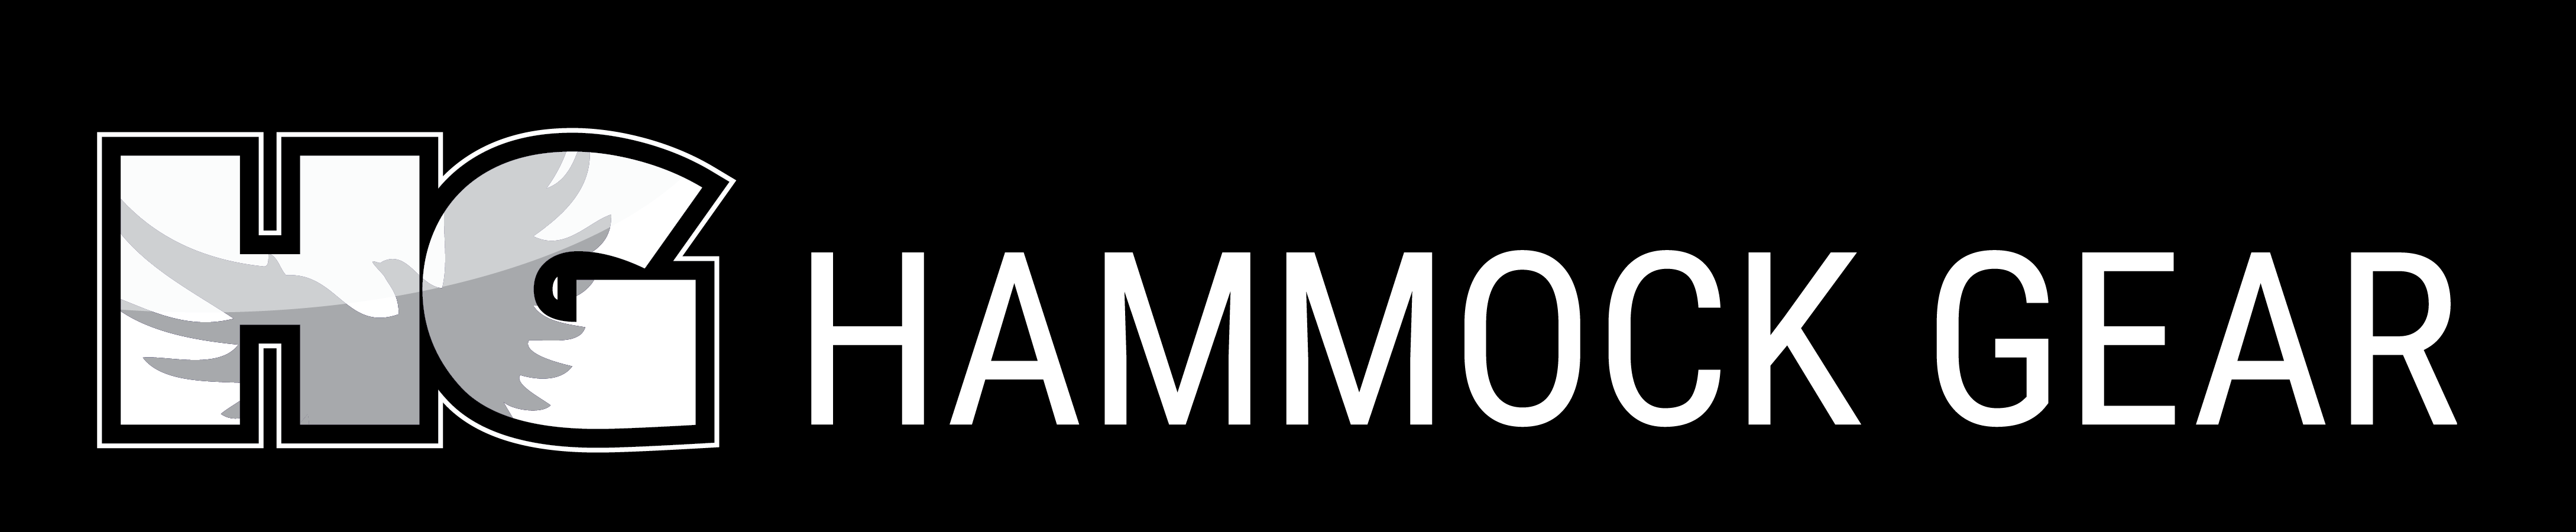 Hammock Gear